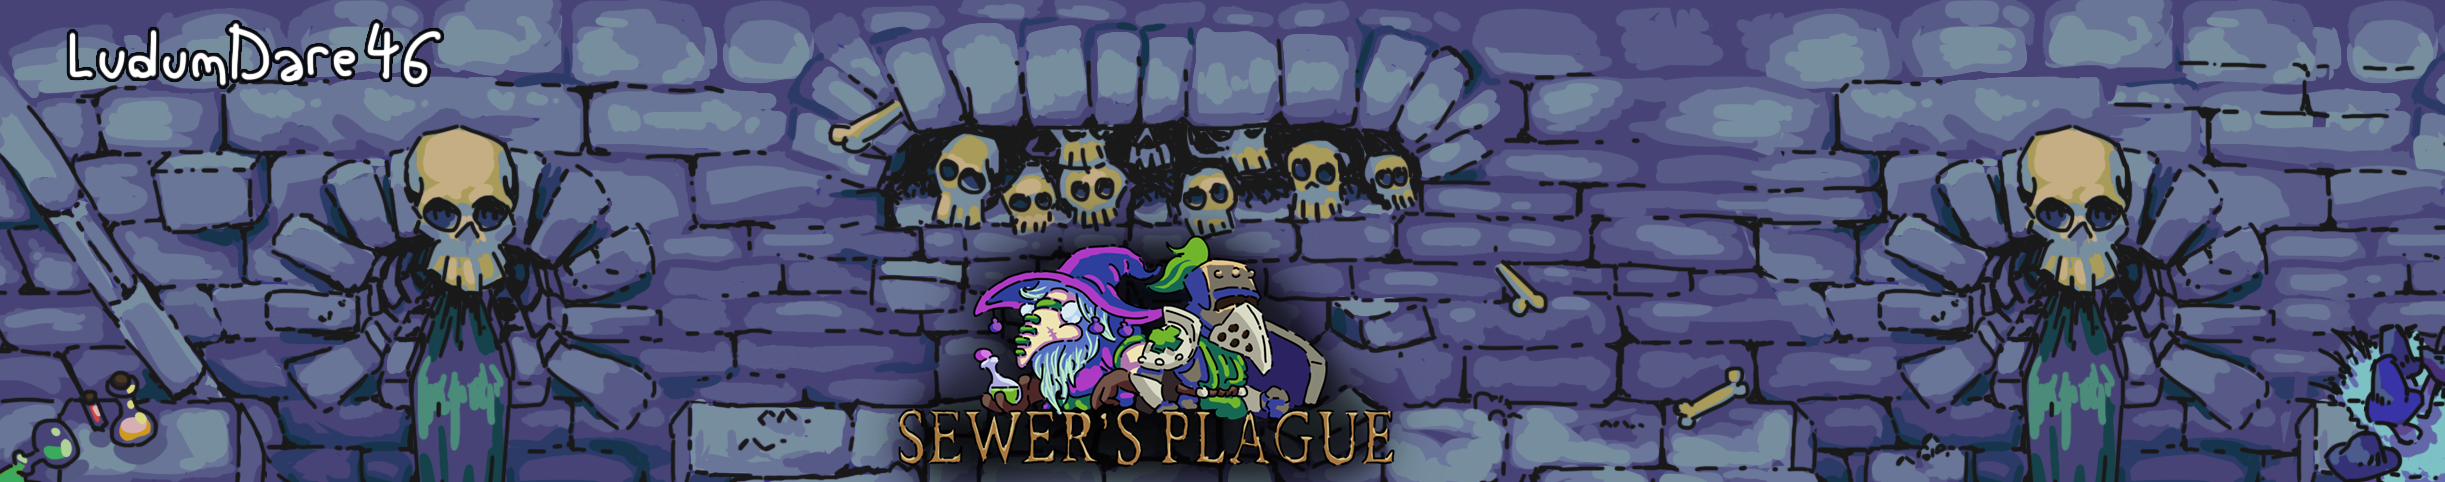 Sewer's Plague